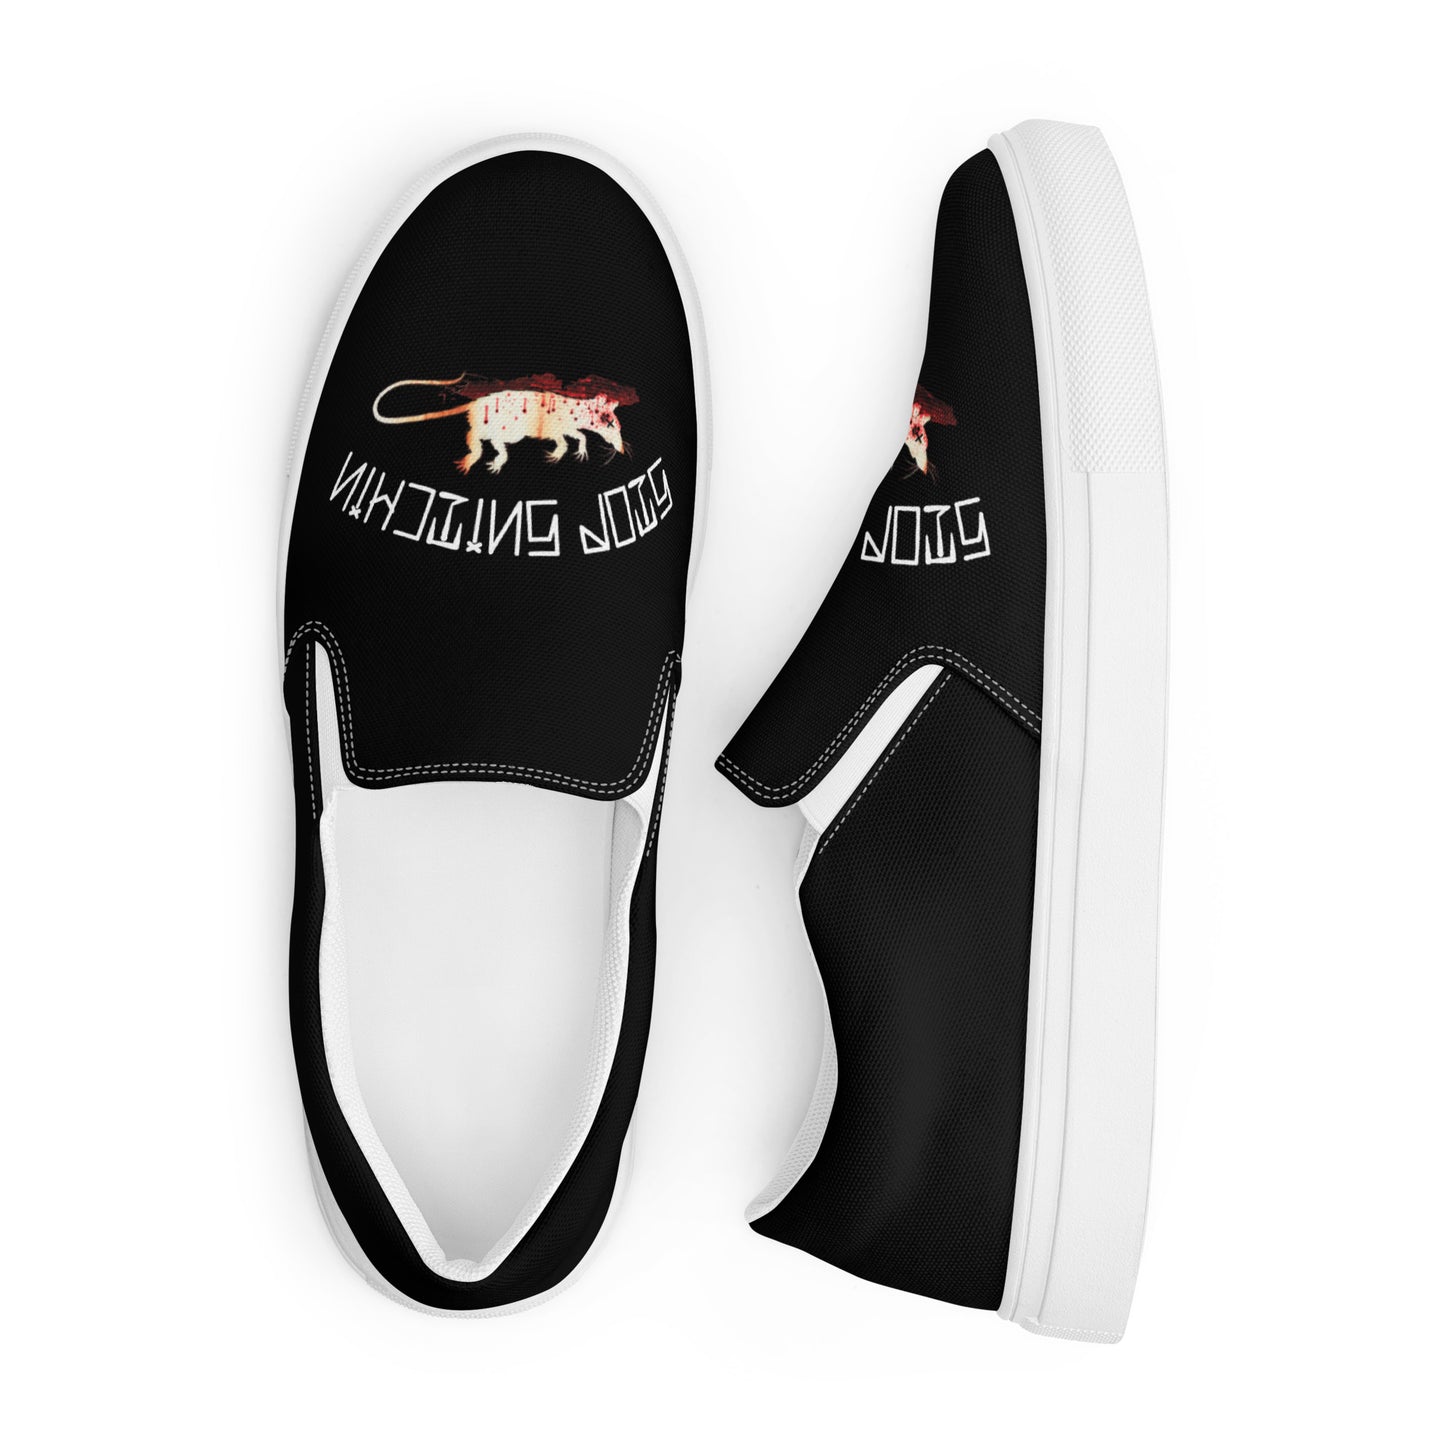 Men’s Fink Black slip-on canvas shoes